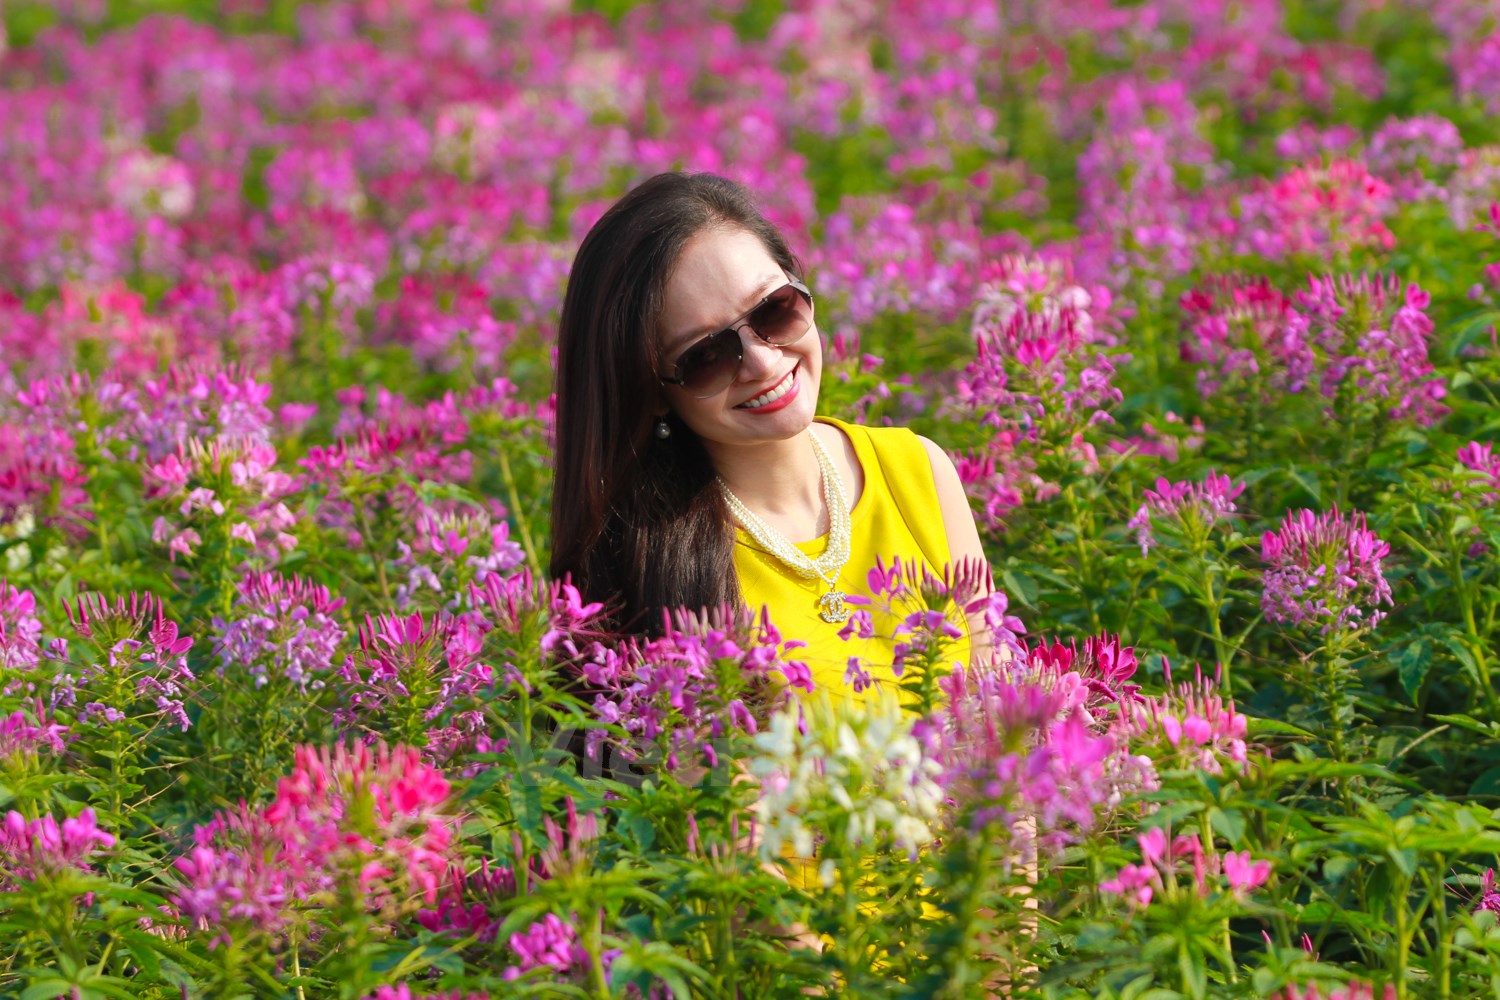 Bên cạnh vườn hoa Nhật Tân vốn đã rất quen thuộc với teen Hà thành, có một địa điểm đang cực thu hút giới trẻ tới chụp ảnh ngay trong lòng thành phố, đó là vườn túy điệp bên cạnh Hồ Tây.